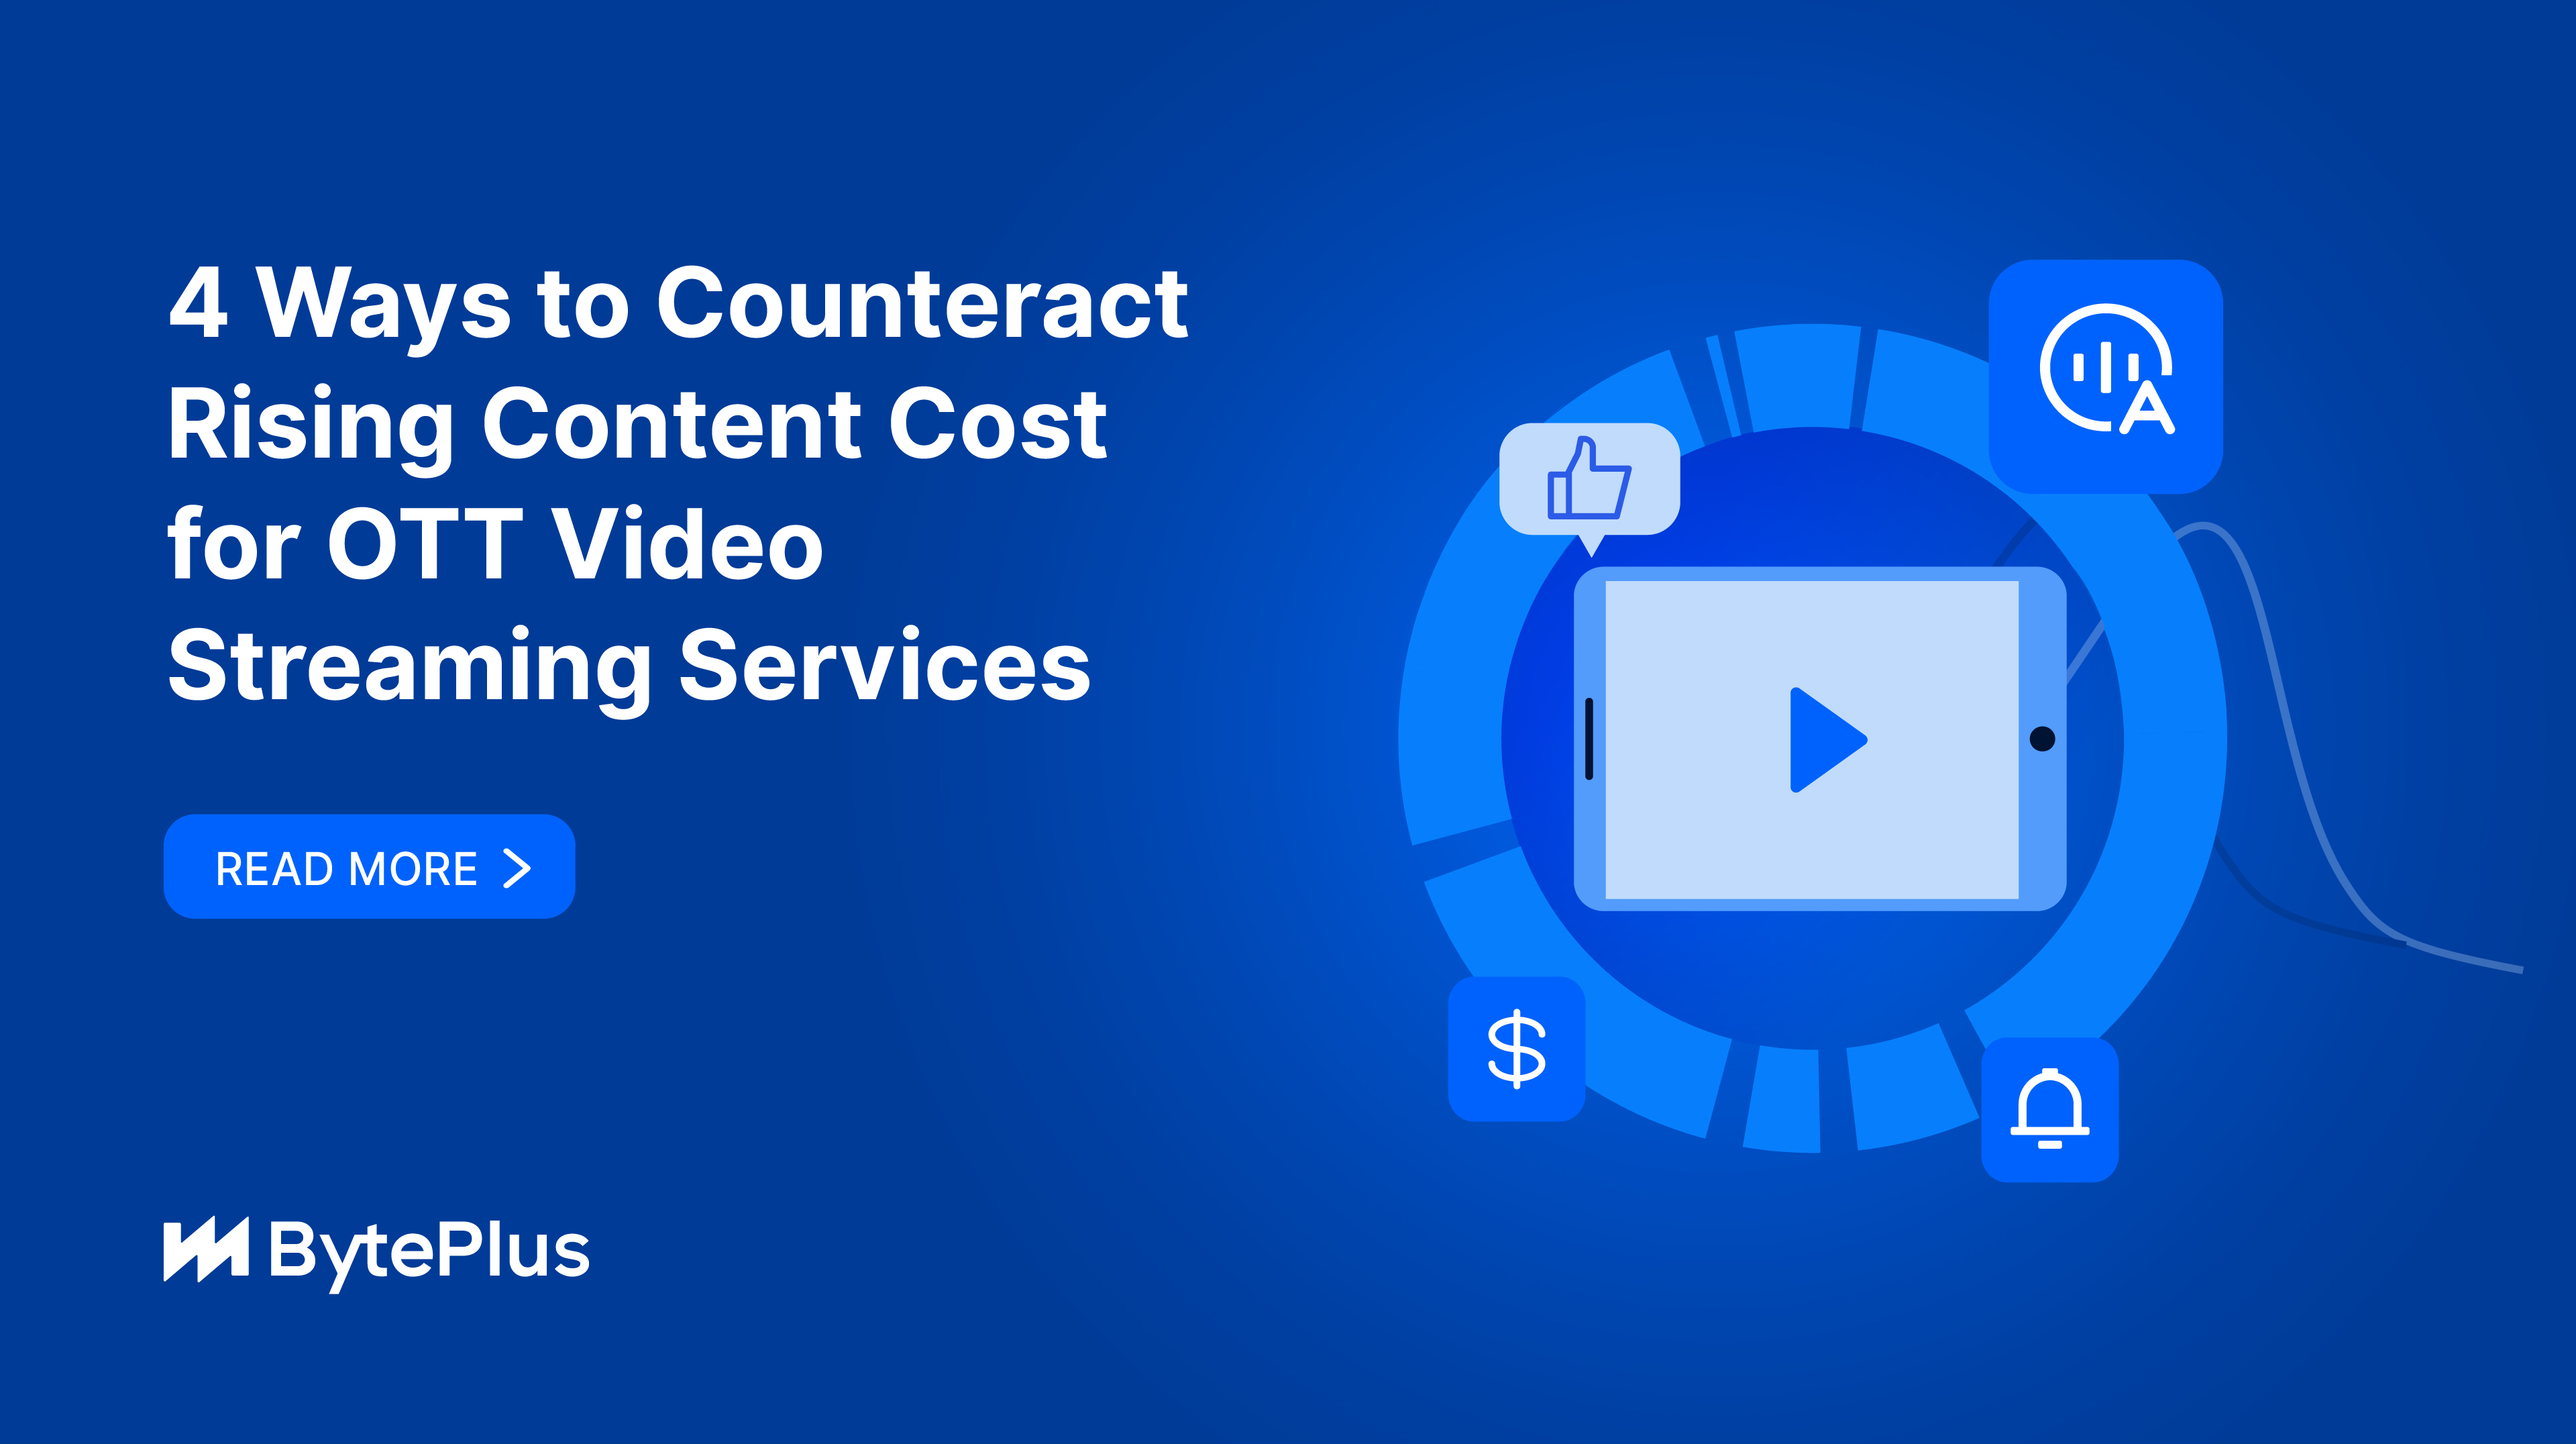 OTT 비디오 스트리밍 서비스의 증가하는 콘텐츠 비용에 대응하는 4가지 방법